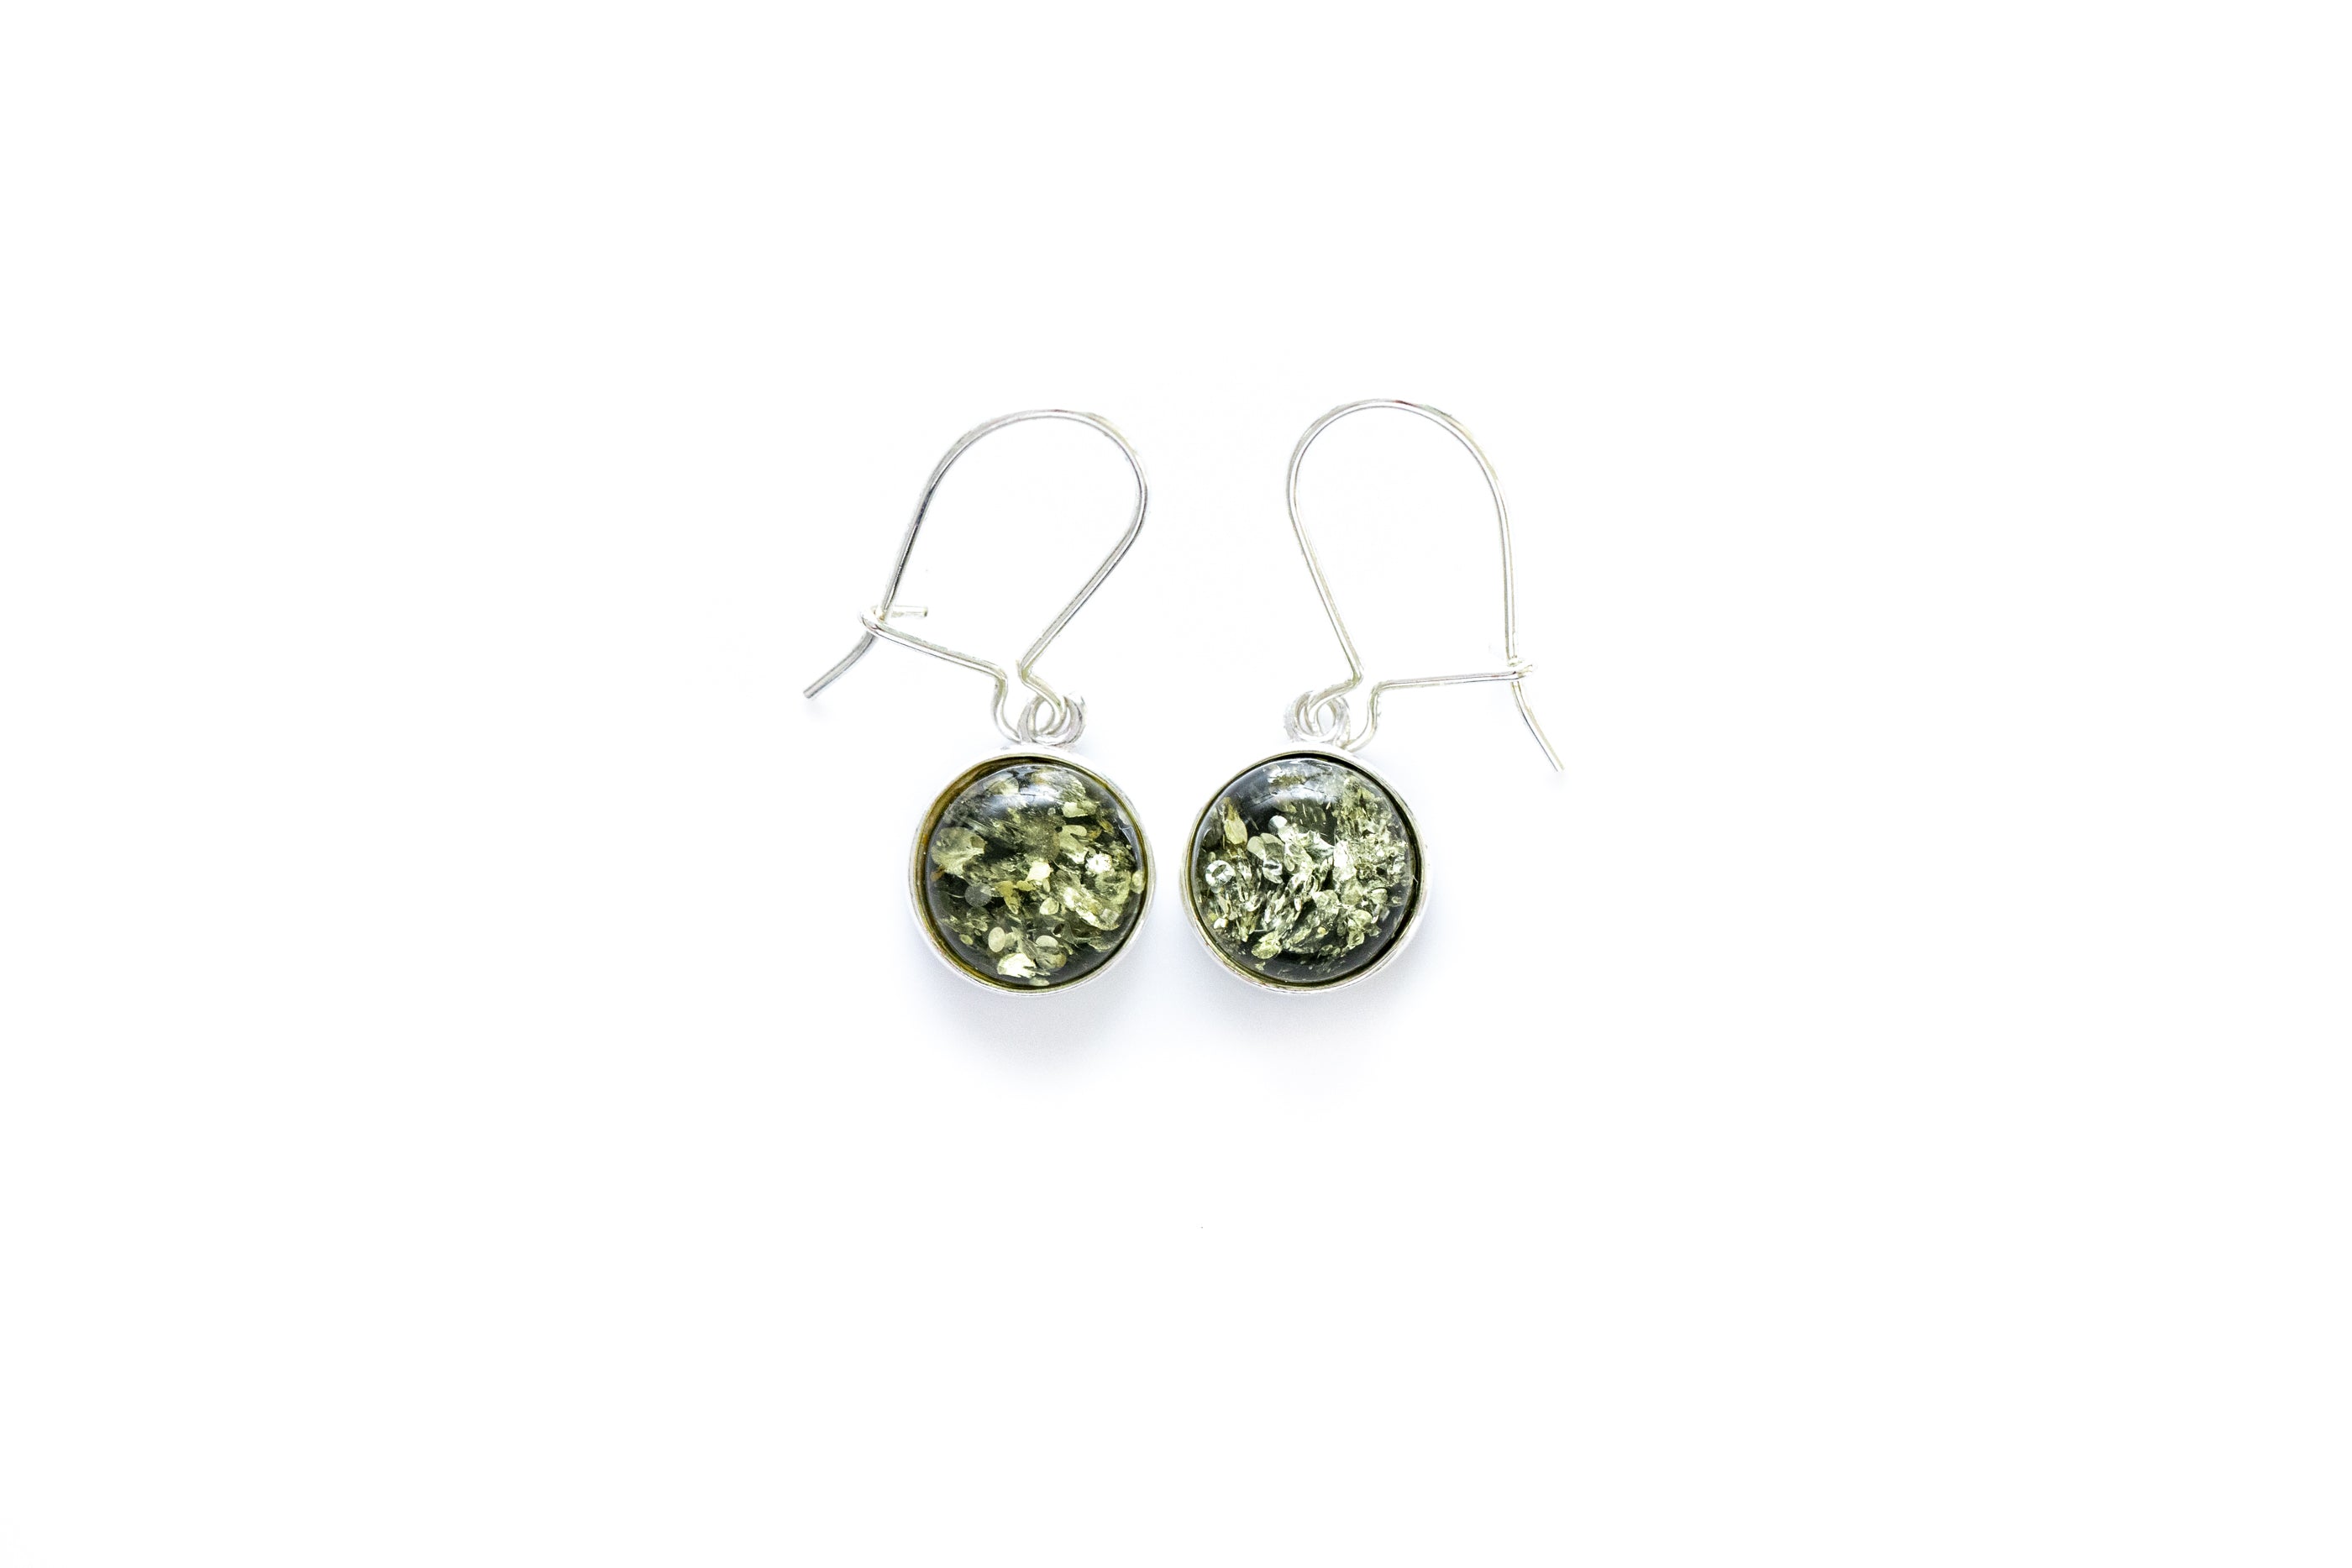 ESSENTIALS Green Amber Drop Earrings- Earrings- Baltic Beauty